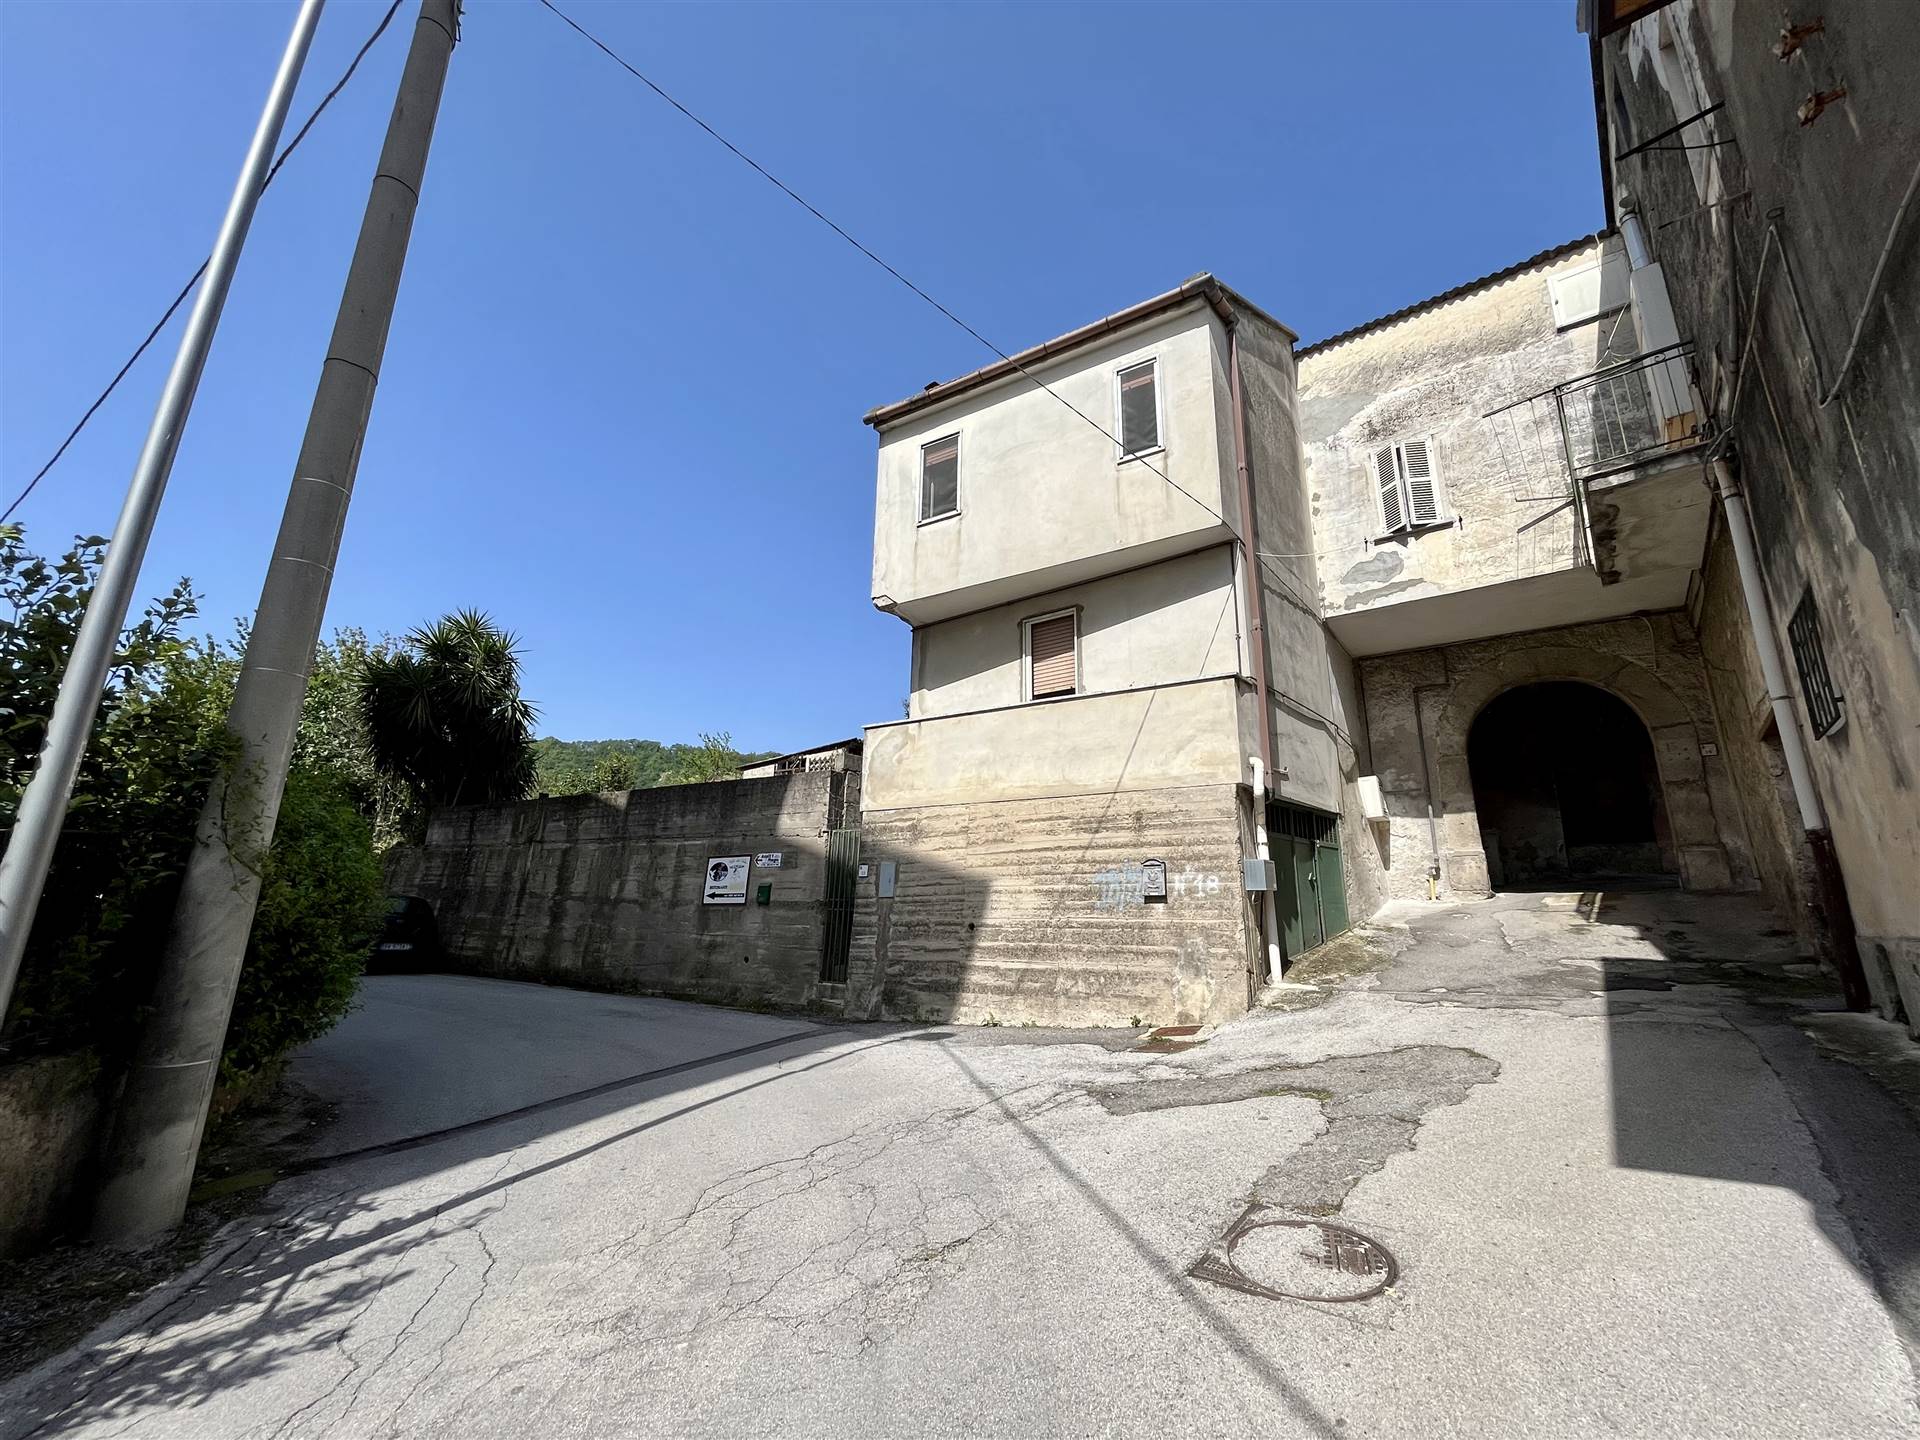 Appartamento in vendita a Pellezzano, 2 locali, prezzo € 60.000 | PortaleAgenzieImmobiliari.it